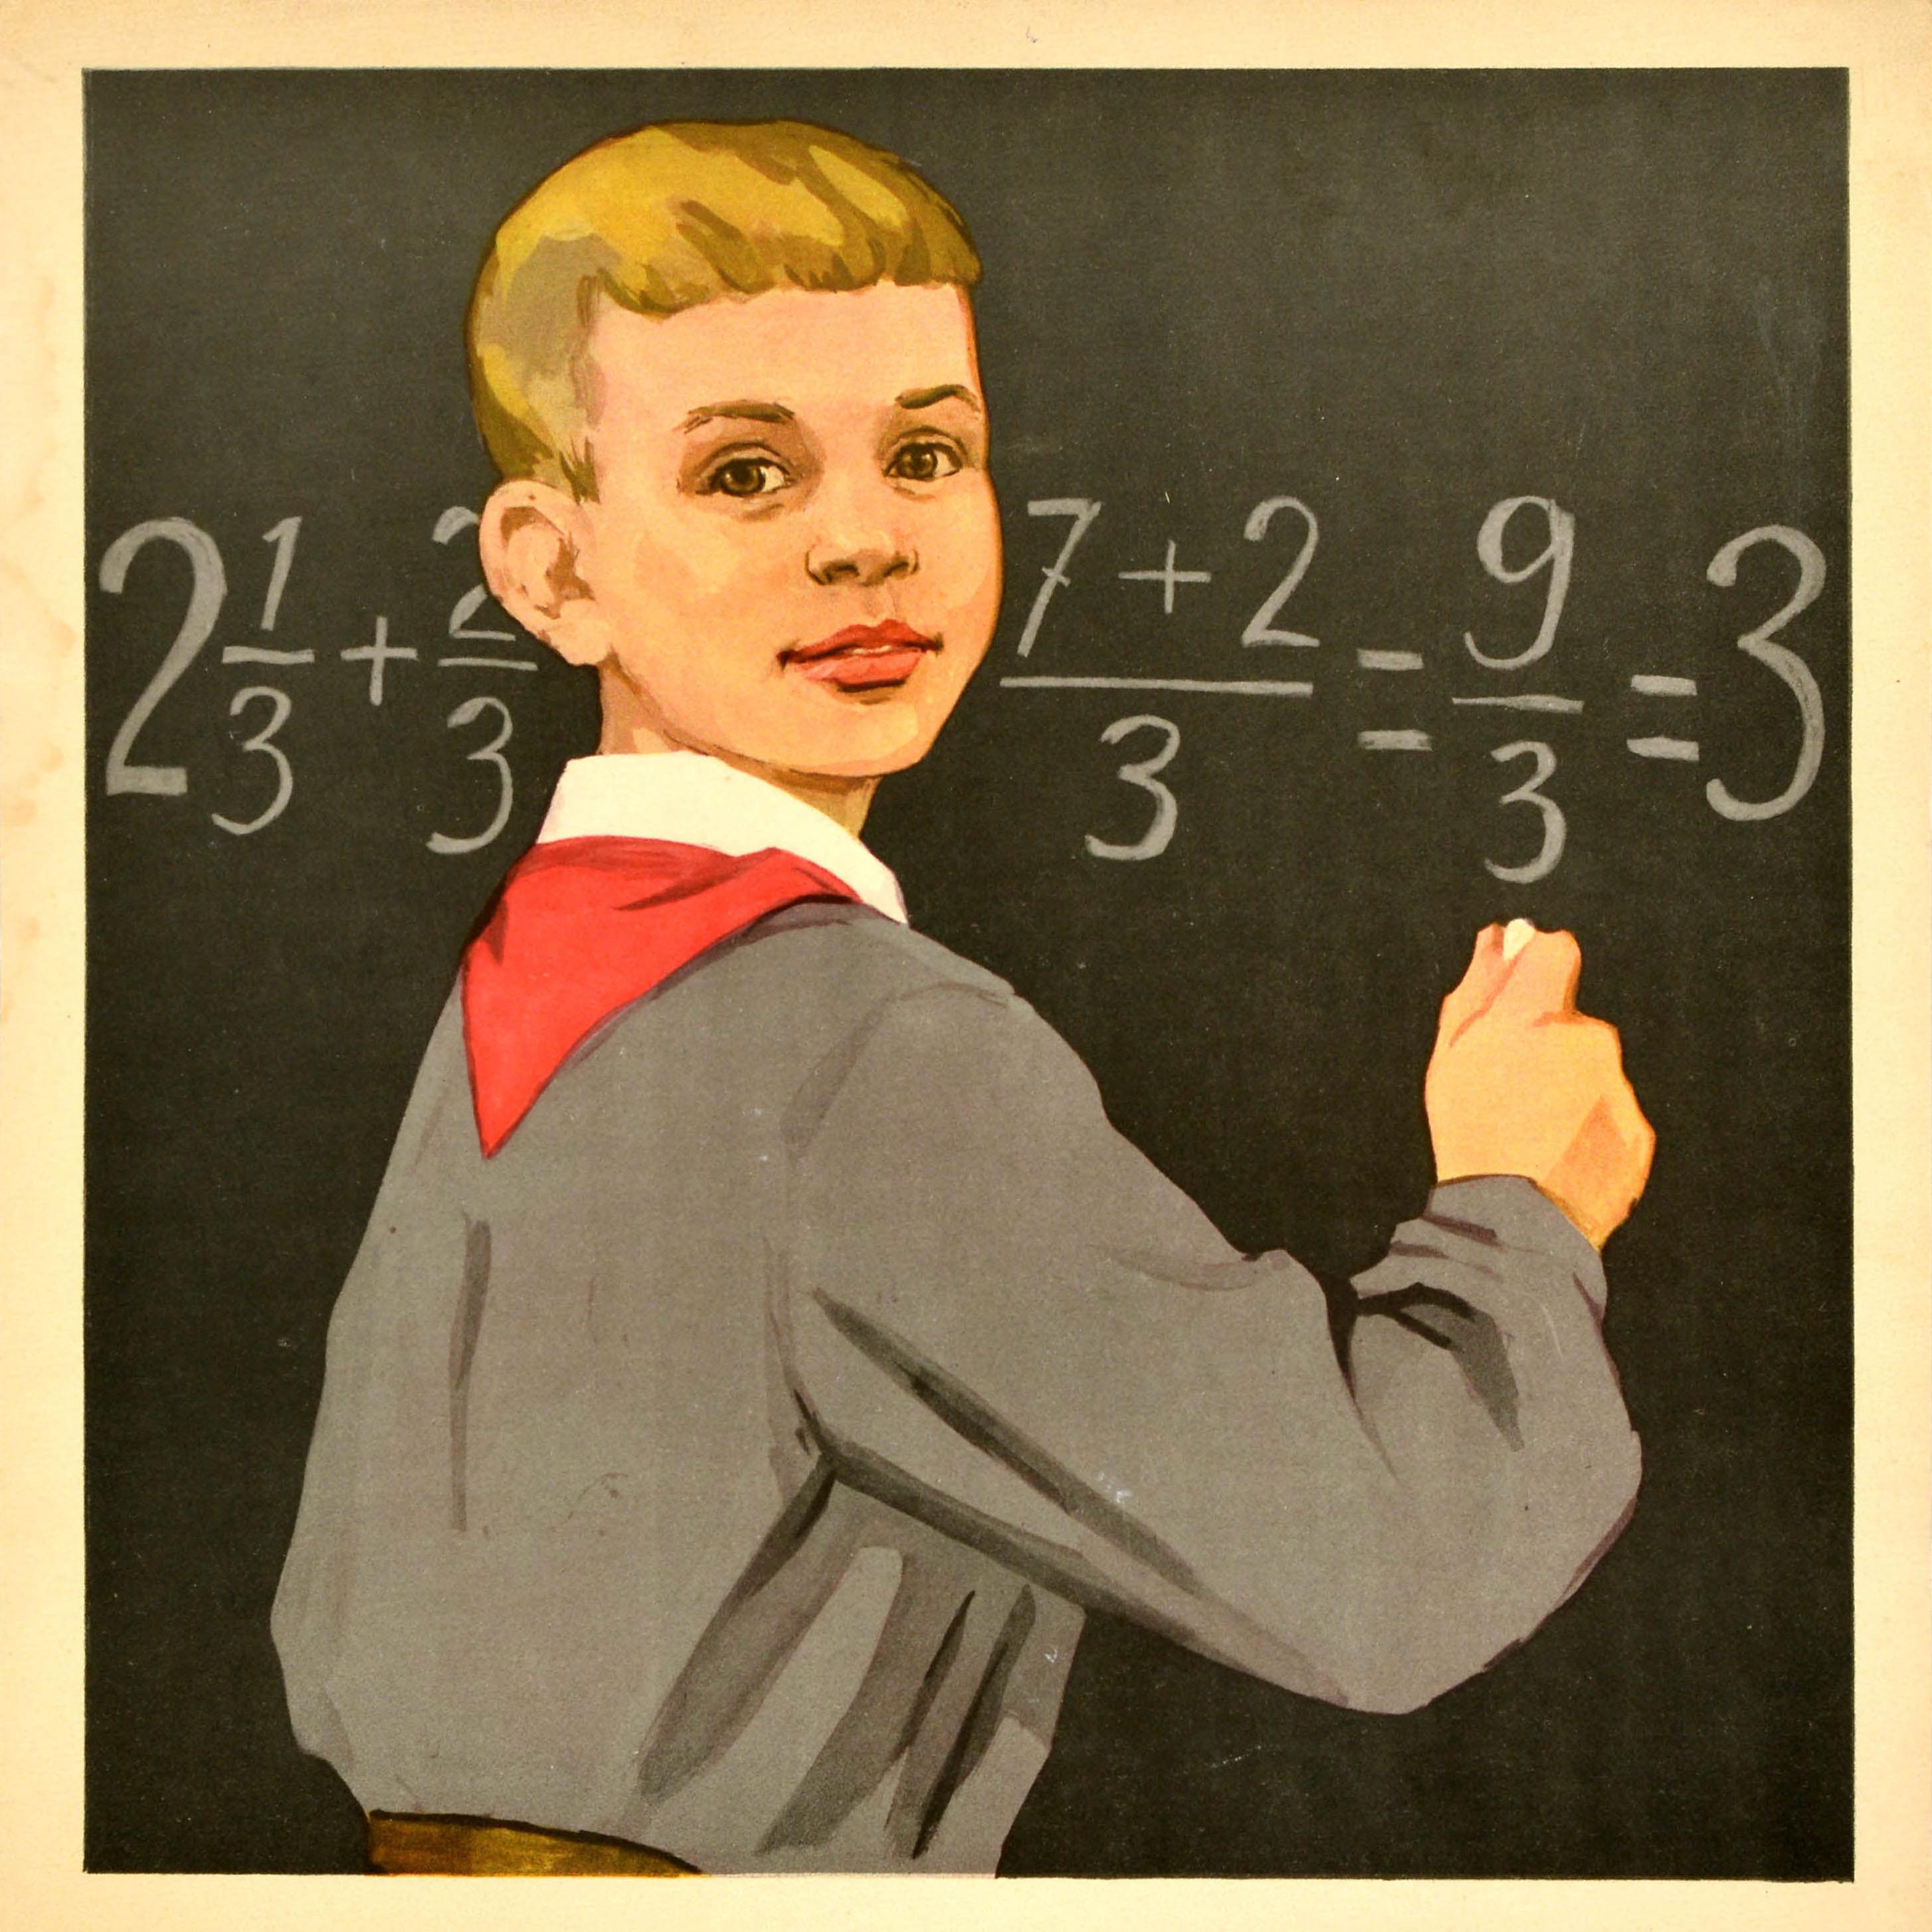 Originales sowjetisches Propagandaplakat - Ein Pionier ist ein fleißiger Schüler, er ist diszipliniert und höflich - mit einer Illustration eines jungen Schuljungen, der eine rote Krawatte der Pioniere trägt und vor einer Kreidetafel steht, auf der